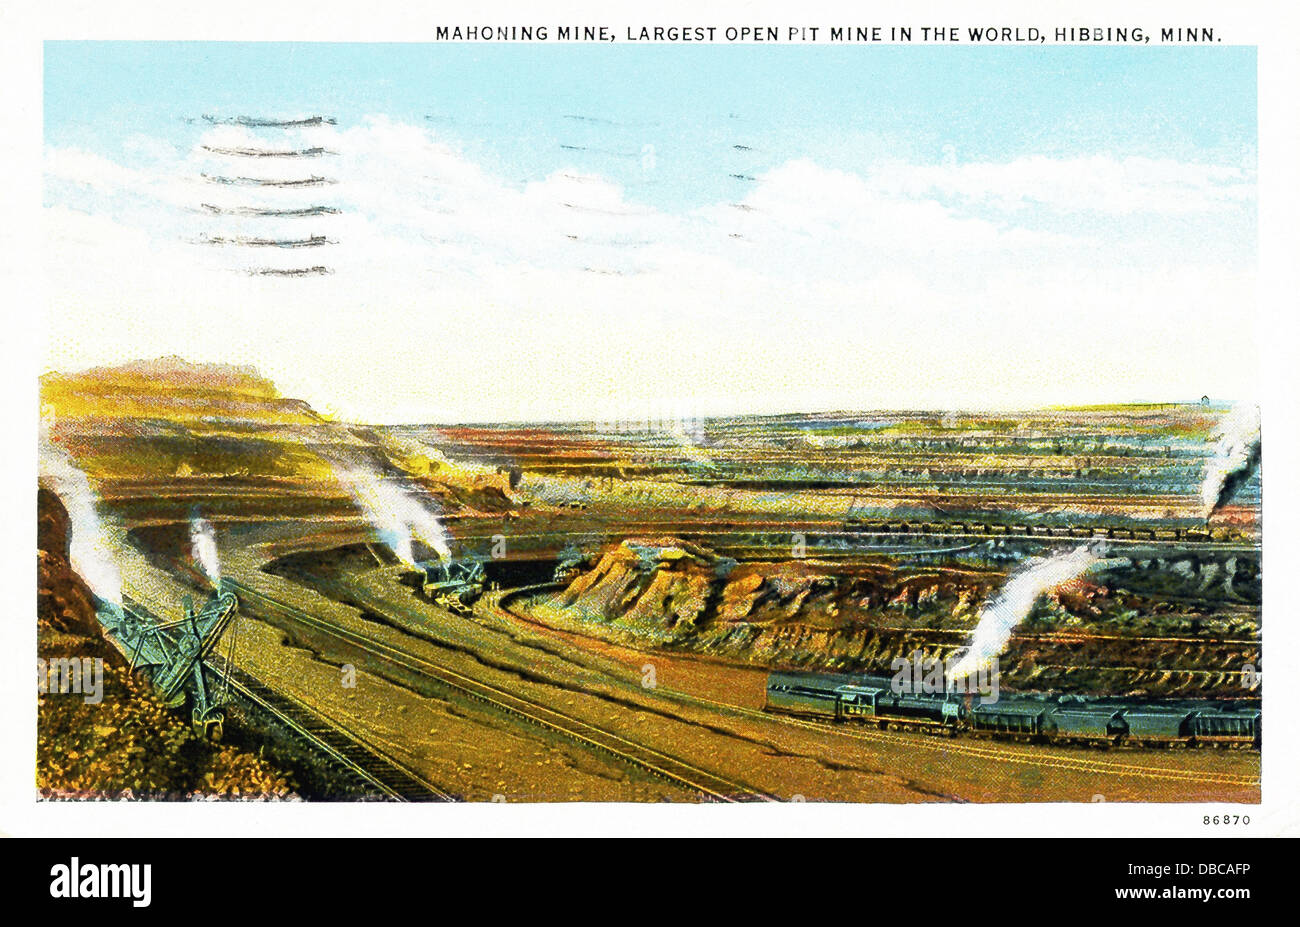 La Miniera Mahoning che in questo 1940s postcard è stata fatturata come la più grande miniera a cielo aperto nel mondo, è in Hibbing, Minnesota. Foto Stock